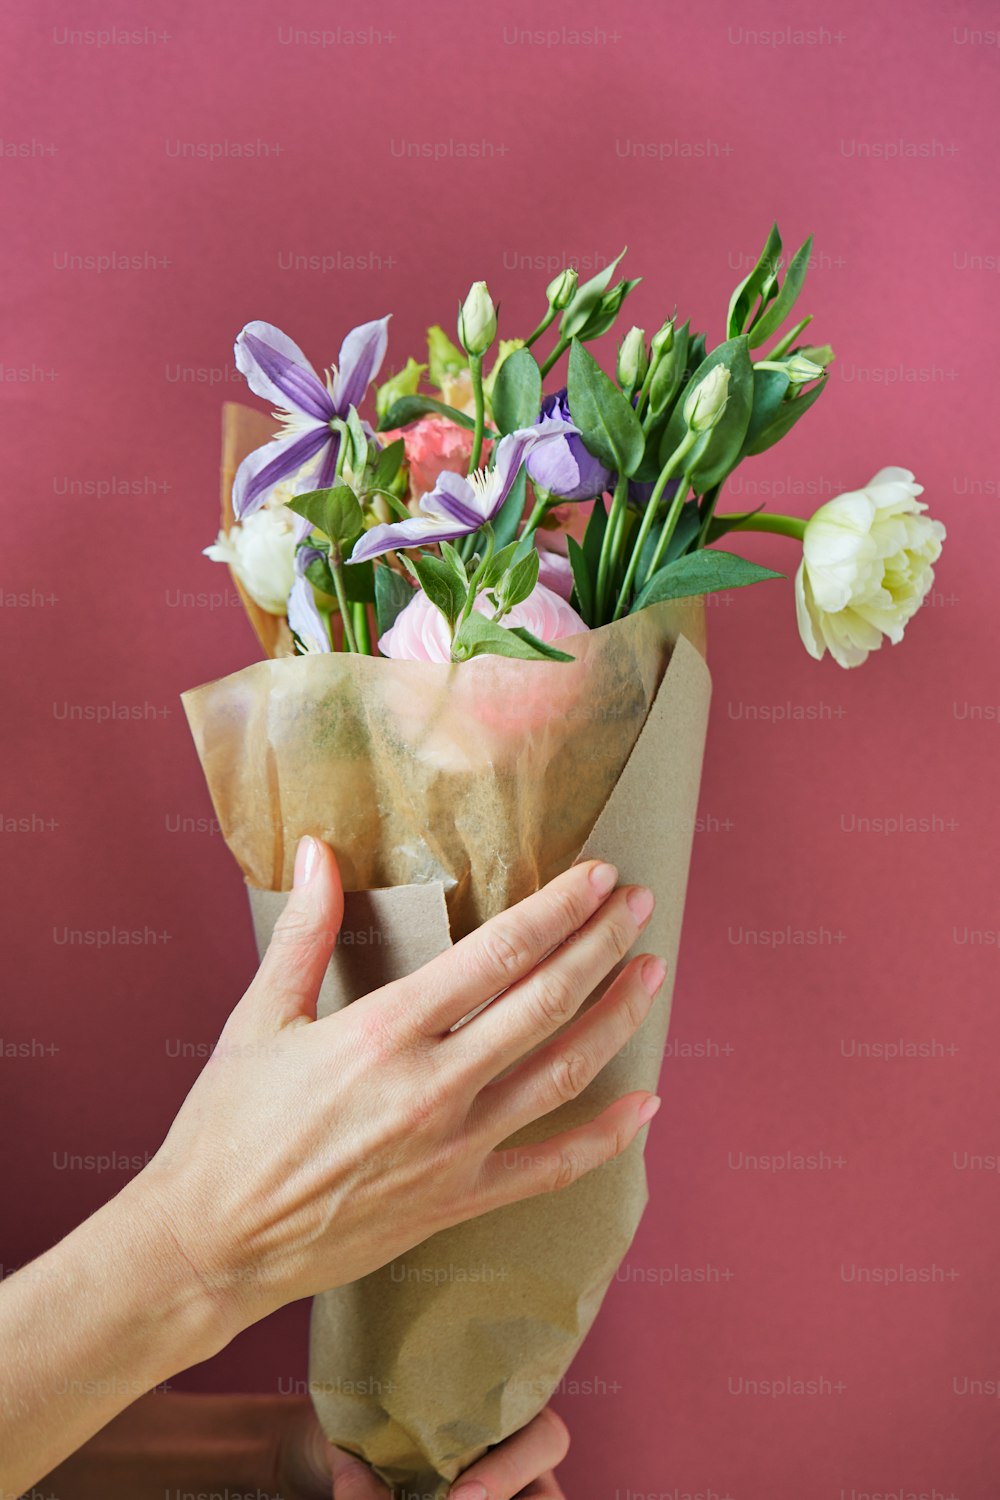 una mano sosteniendo una taza de flores